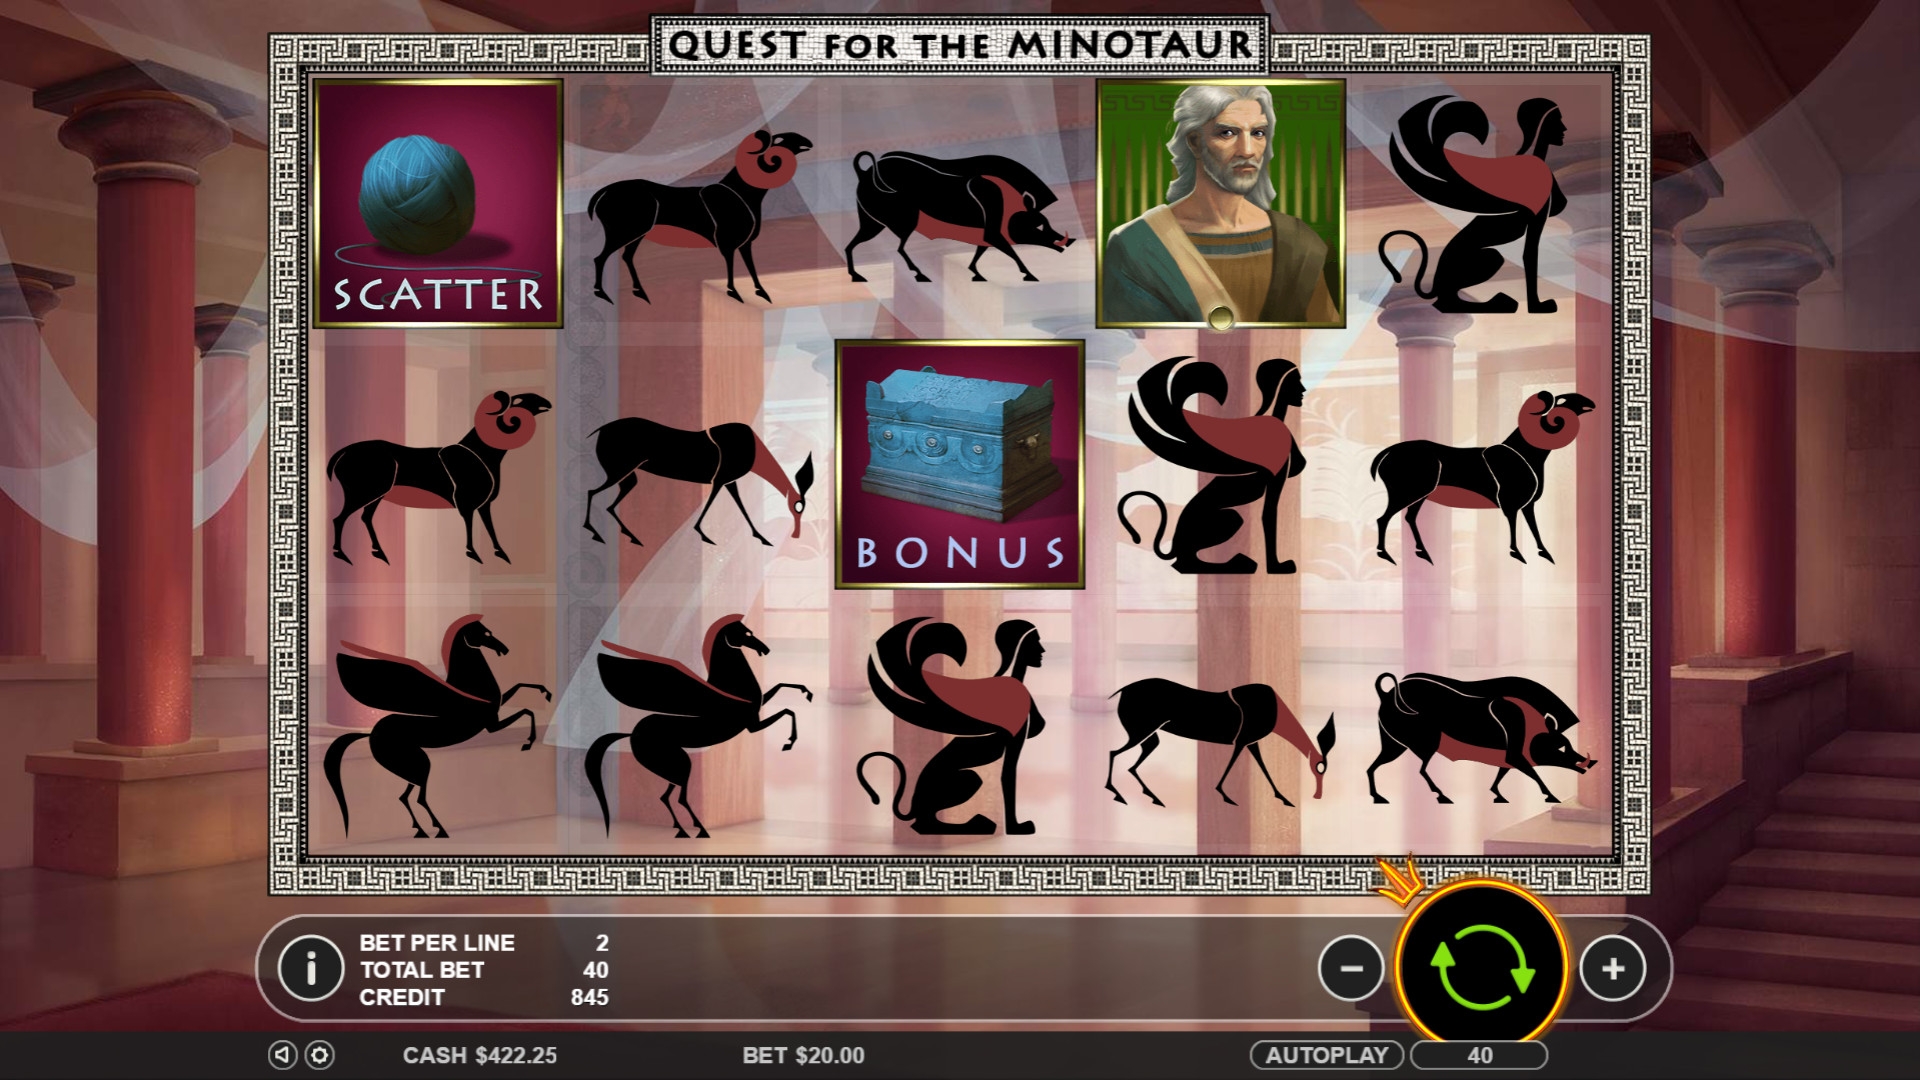 Quest for the Minotaur (Quest for the Minotaur) from category Slots